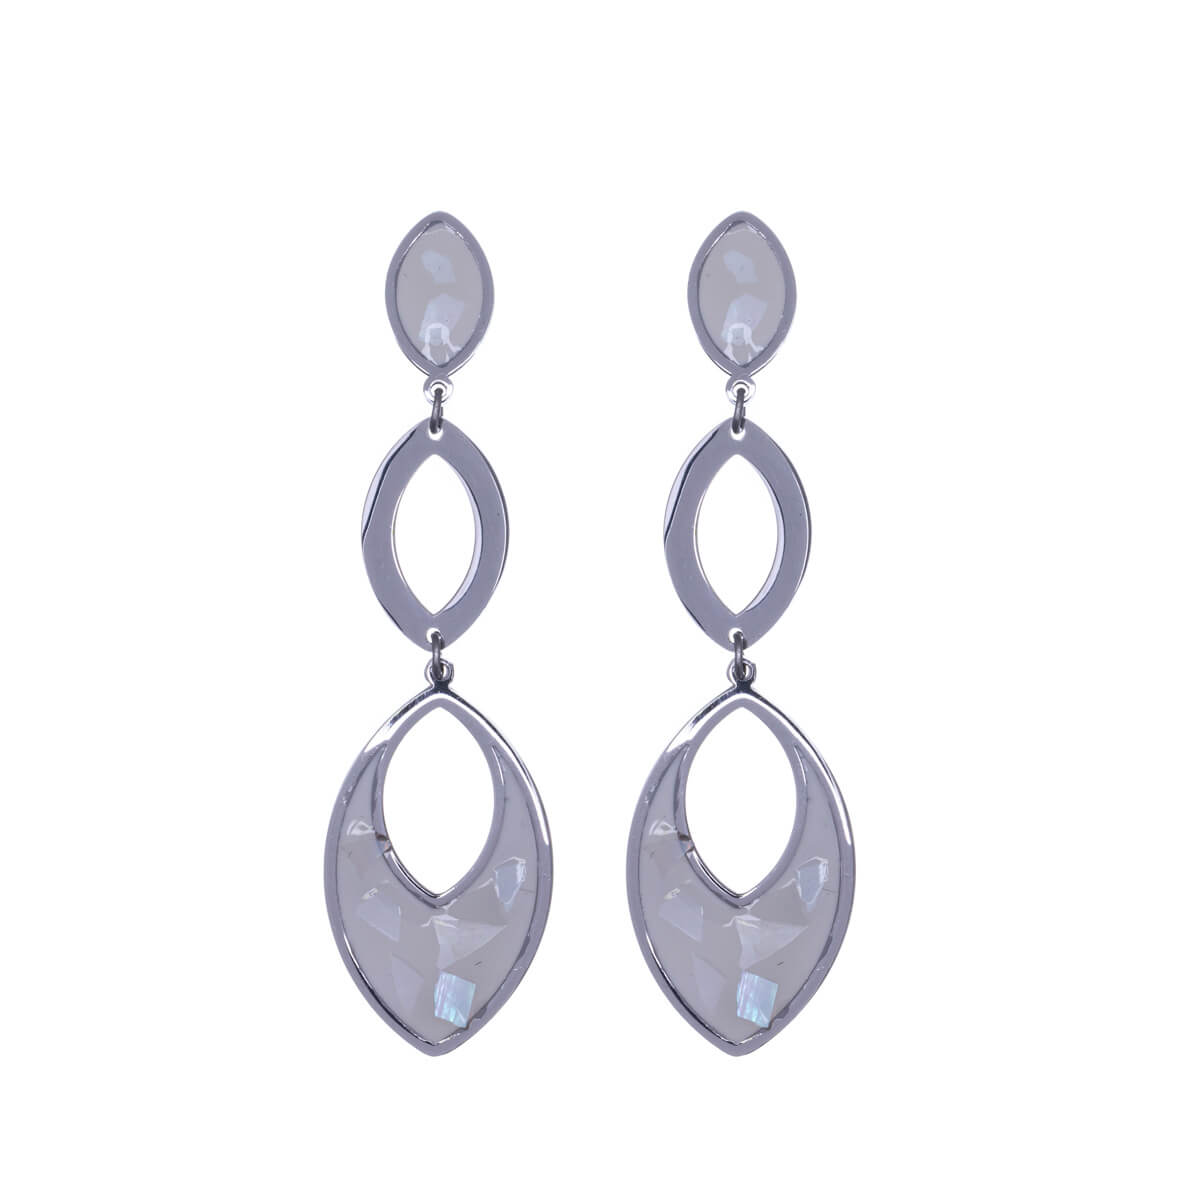 Hanging oval earrings (Steel 316L)